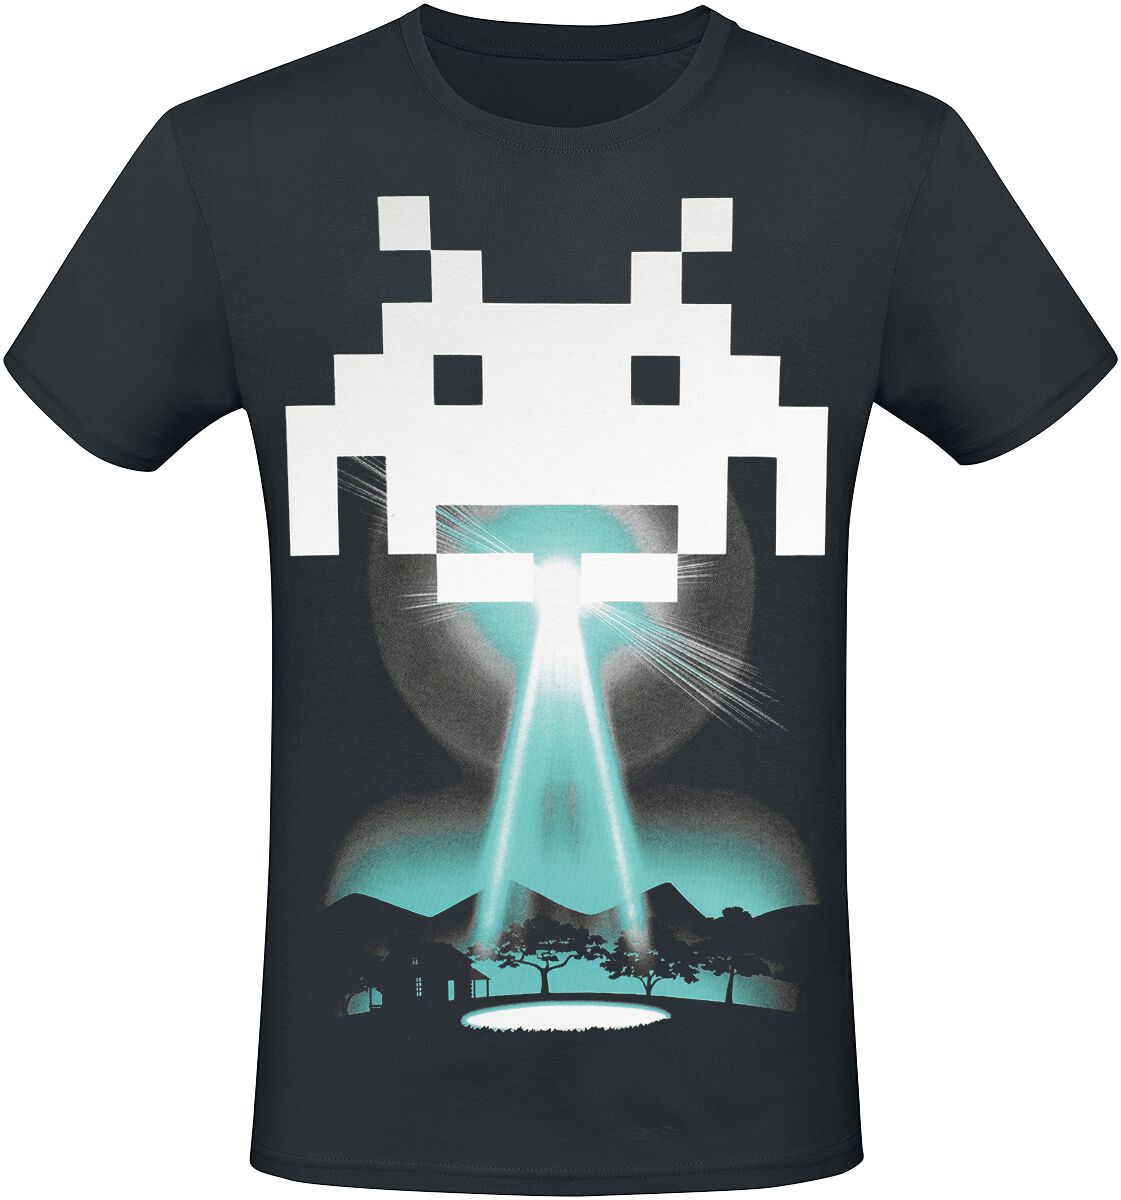 Space Invaders - Gaming T-Shirt - Beam Me Up Alien - XS bis 3XL - für Männer - Größe XXL - schwarz  - EMP exklusives Merchandise!